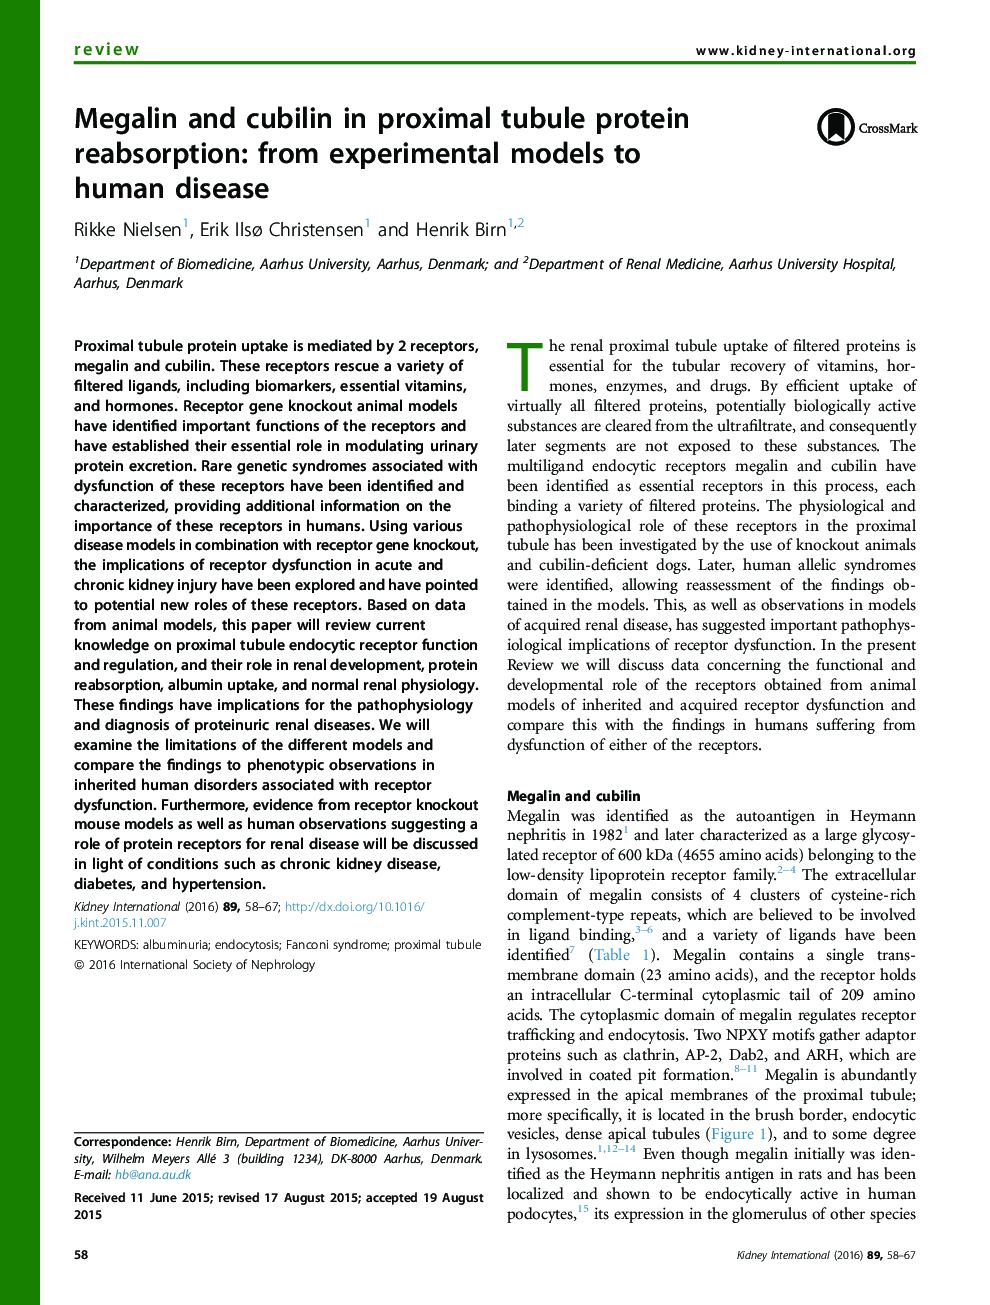 مگالین و کوبیلیین در پروبیال پروگزیمال پروتئین جذب: از مدل های تجربی به بیماری انسانی 